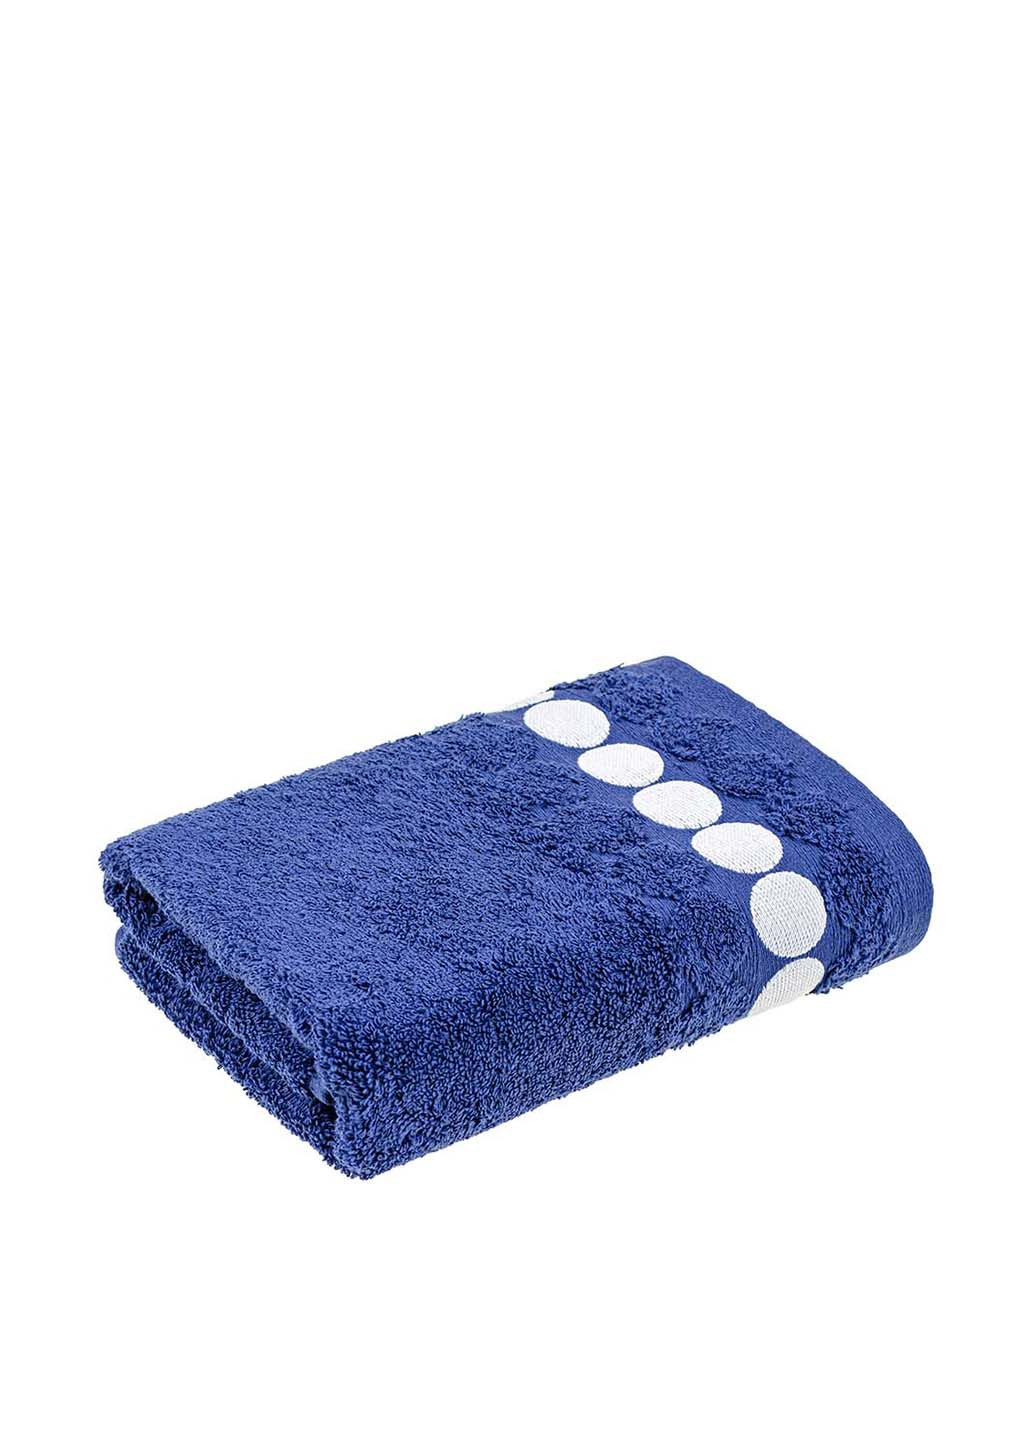 Home Line полотенце, 50х90 см однотонный синий производство - Турция